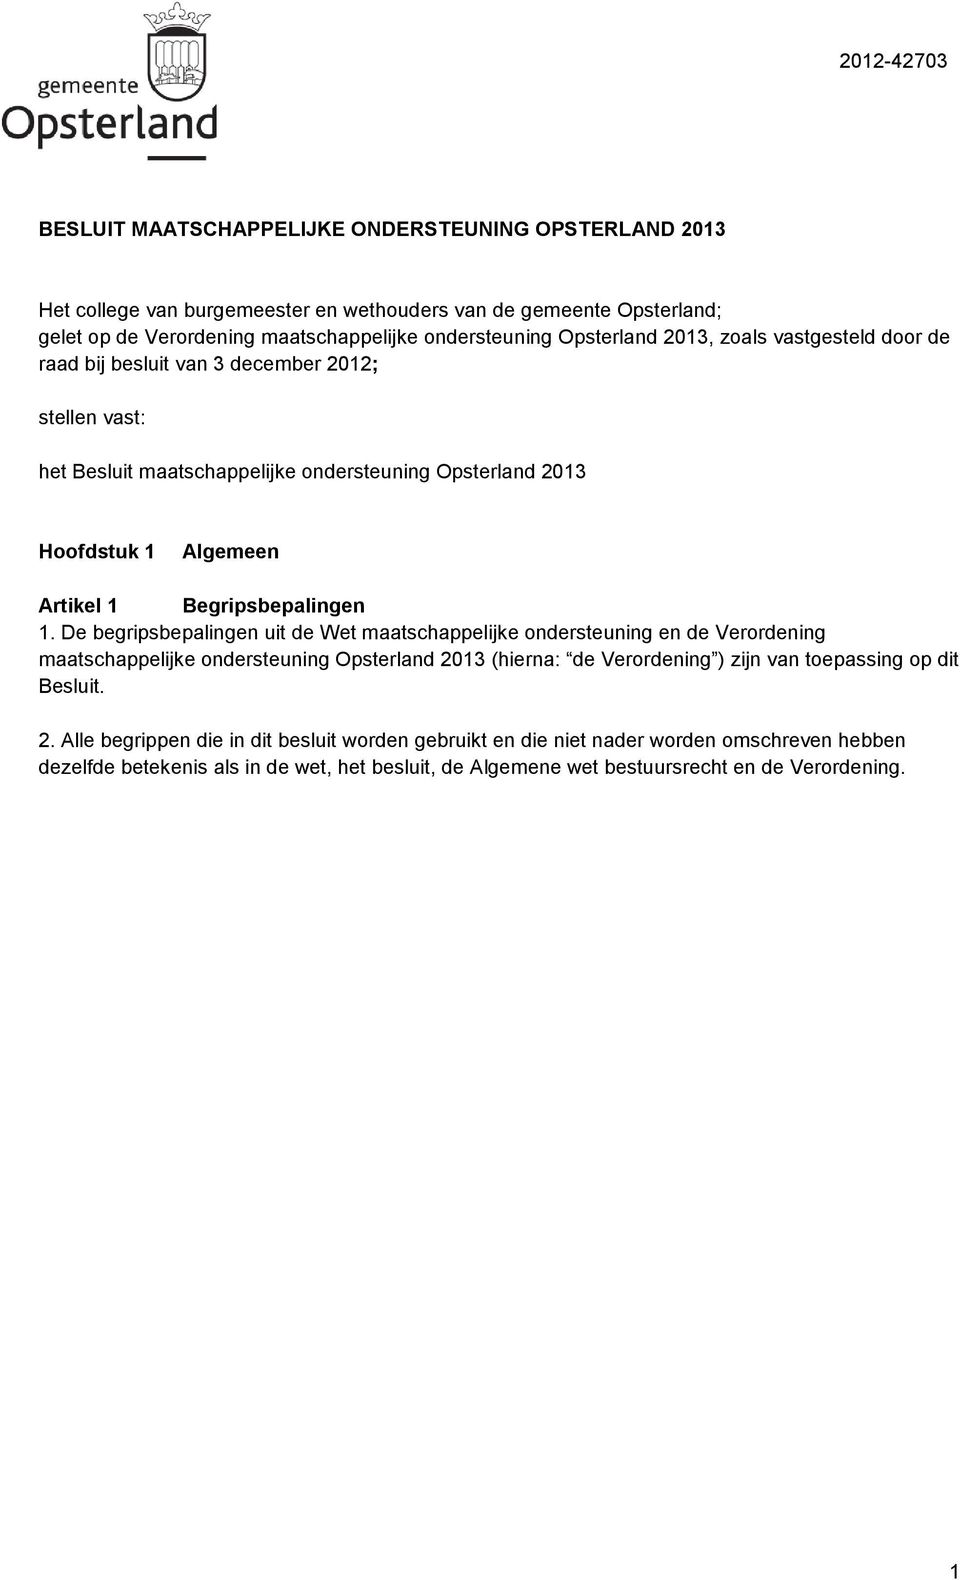 1. De begripsbepalingen uit de Wet maatschappelijke ondersteuning en de Verordening maatschappelijke ondersteuning Opsterland 2013 (hierna: de Verordening ) zijn van toepassing op dit Besluit.